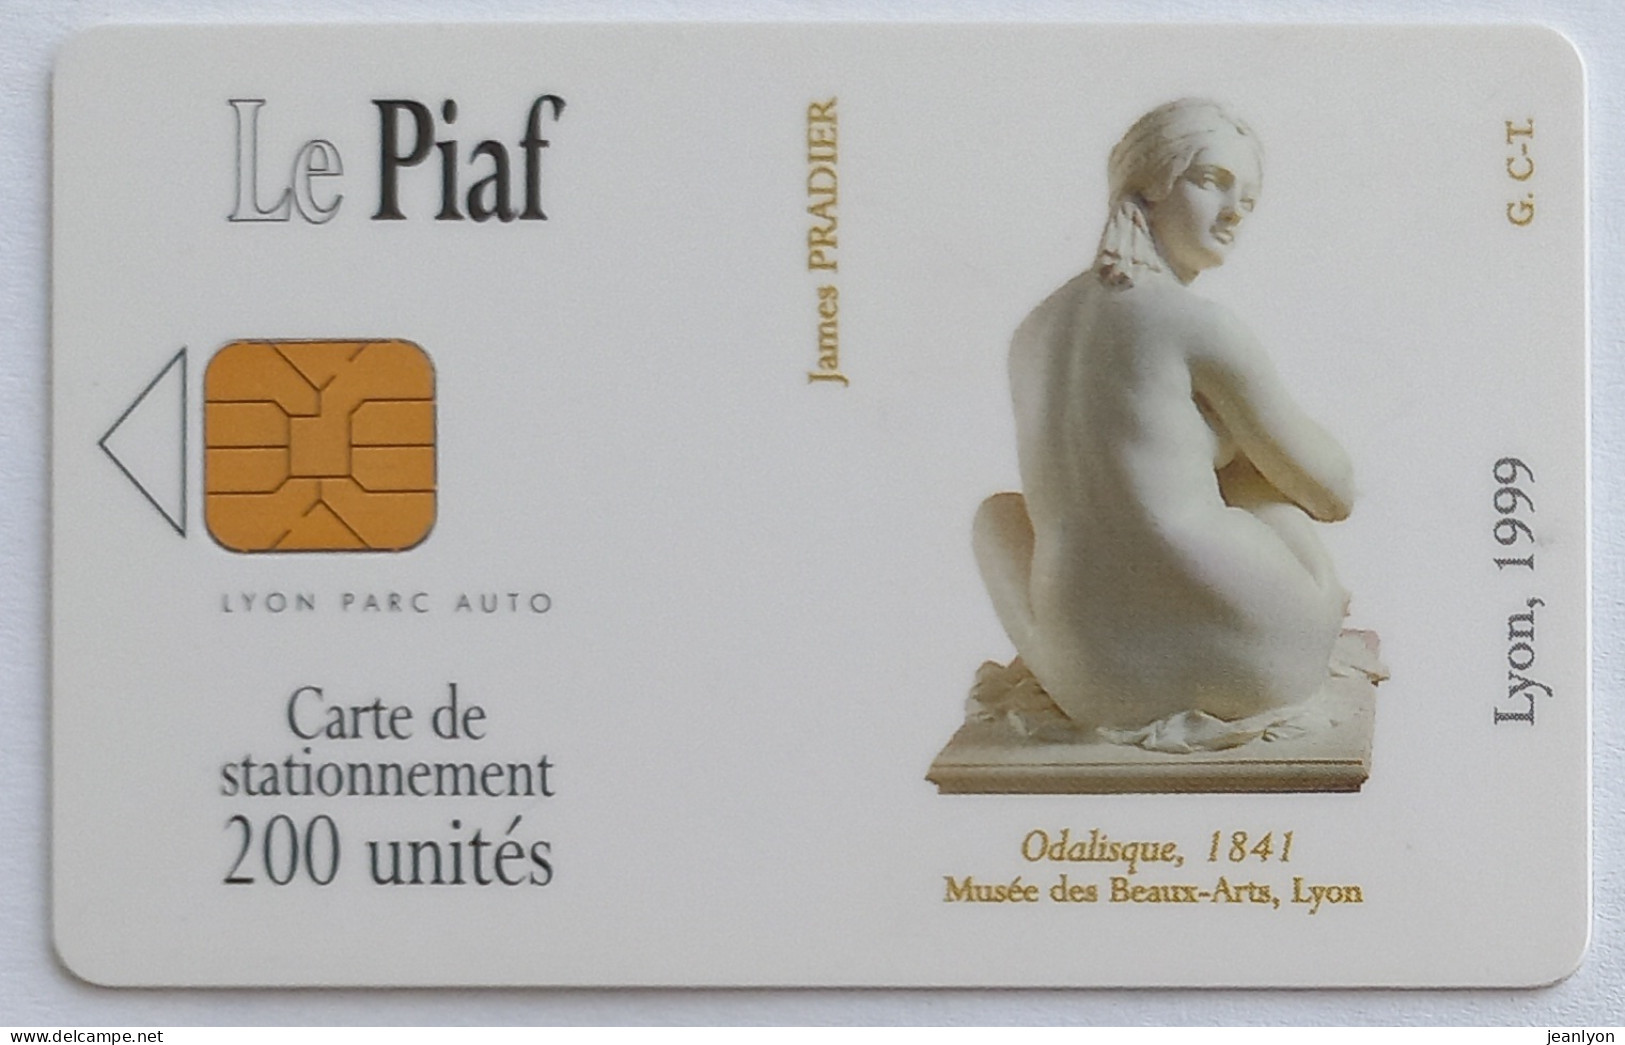 PIAF LYON - Carte Stationnement 1999 - ODALISQUE - Art / Statue - Musée Des Beaux Arts Lyon - Parkkarten